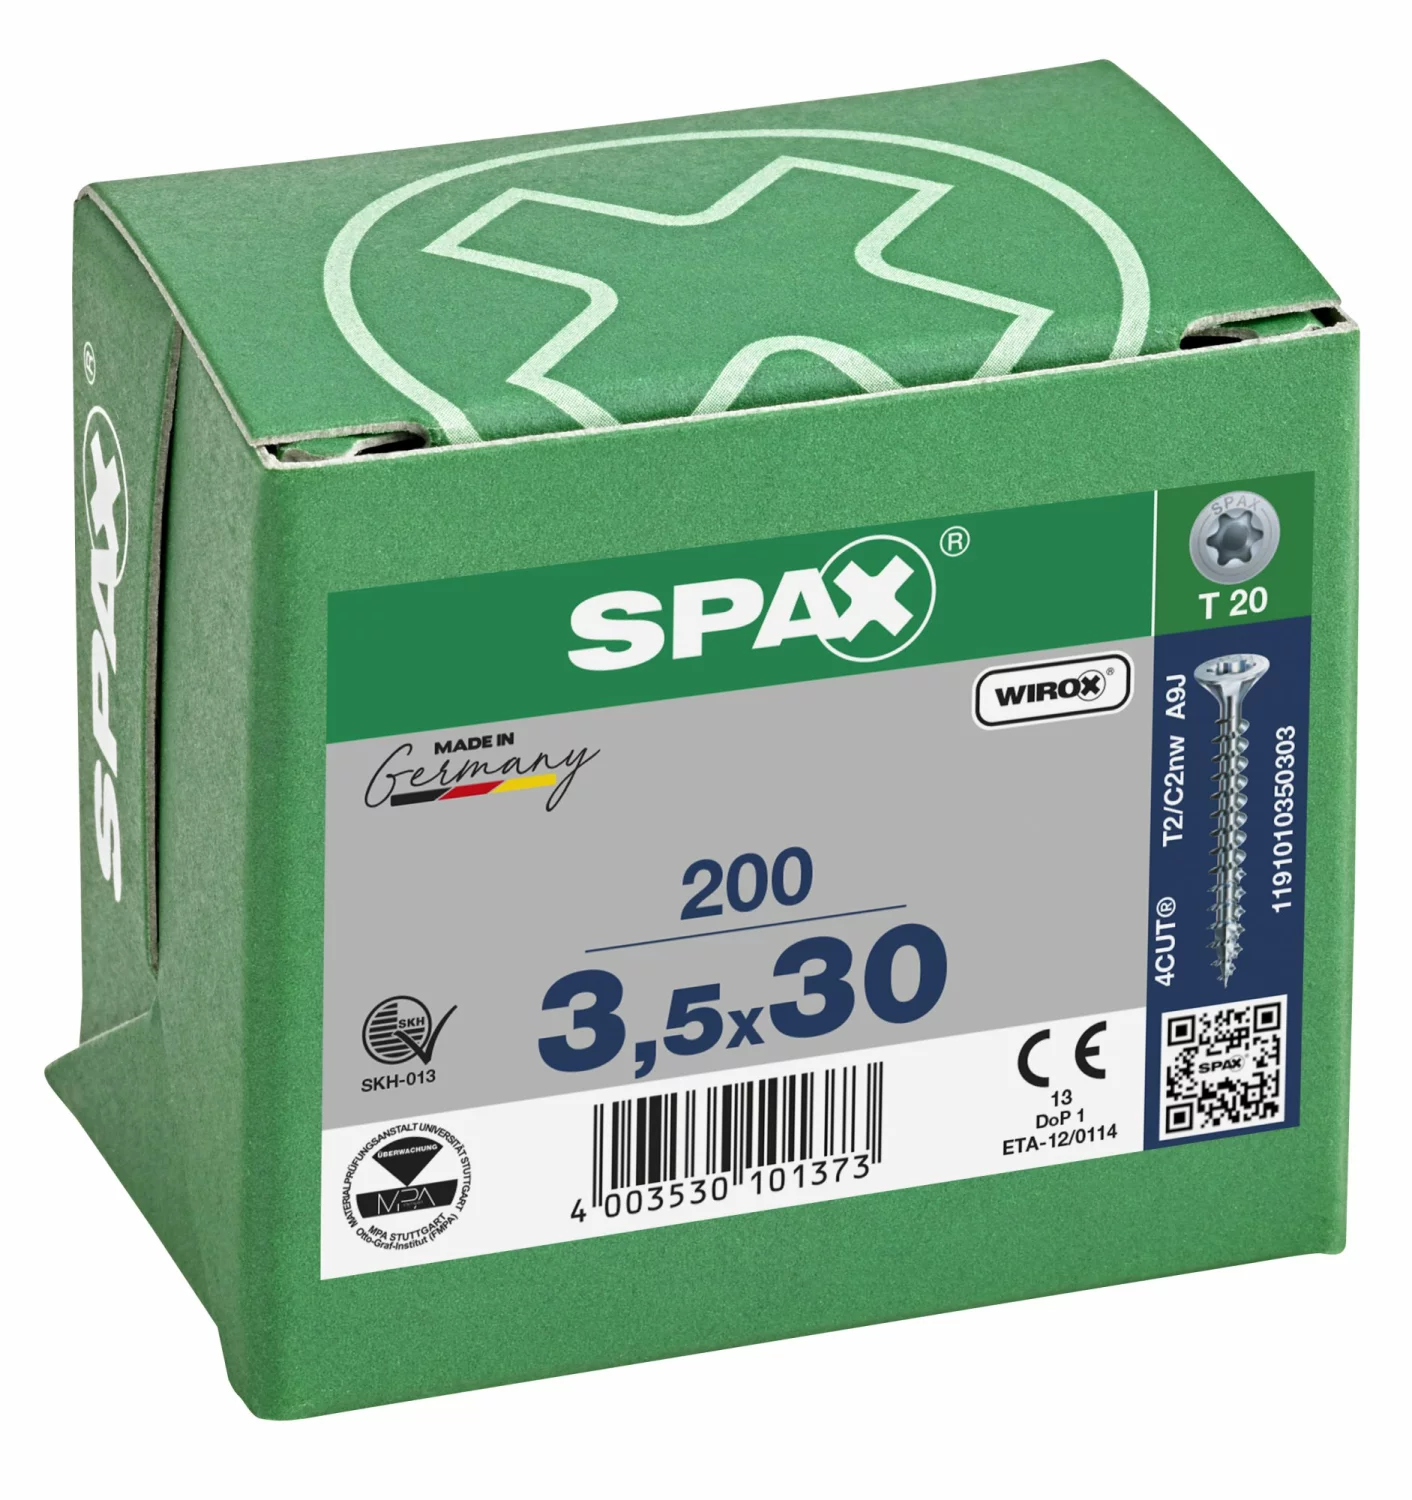 SPAX 1191010350303 Universele schroef, Verzonken kop, 3.5 x 30, Voldraad, T-STAR plus T20 - WIROX - 200 stuks